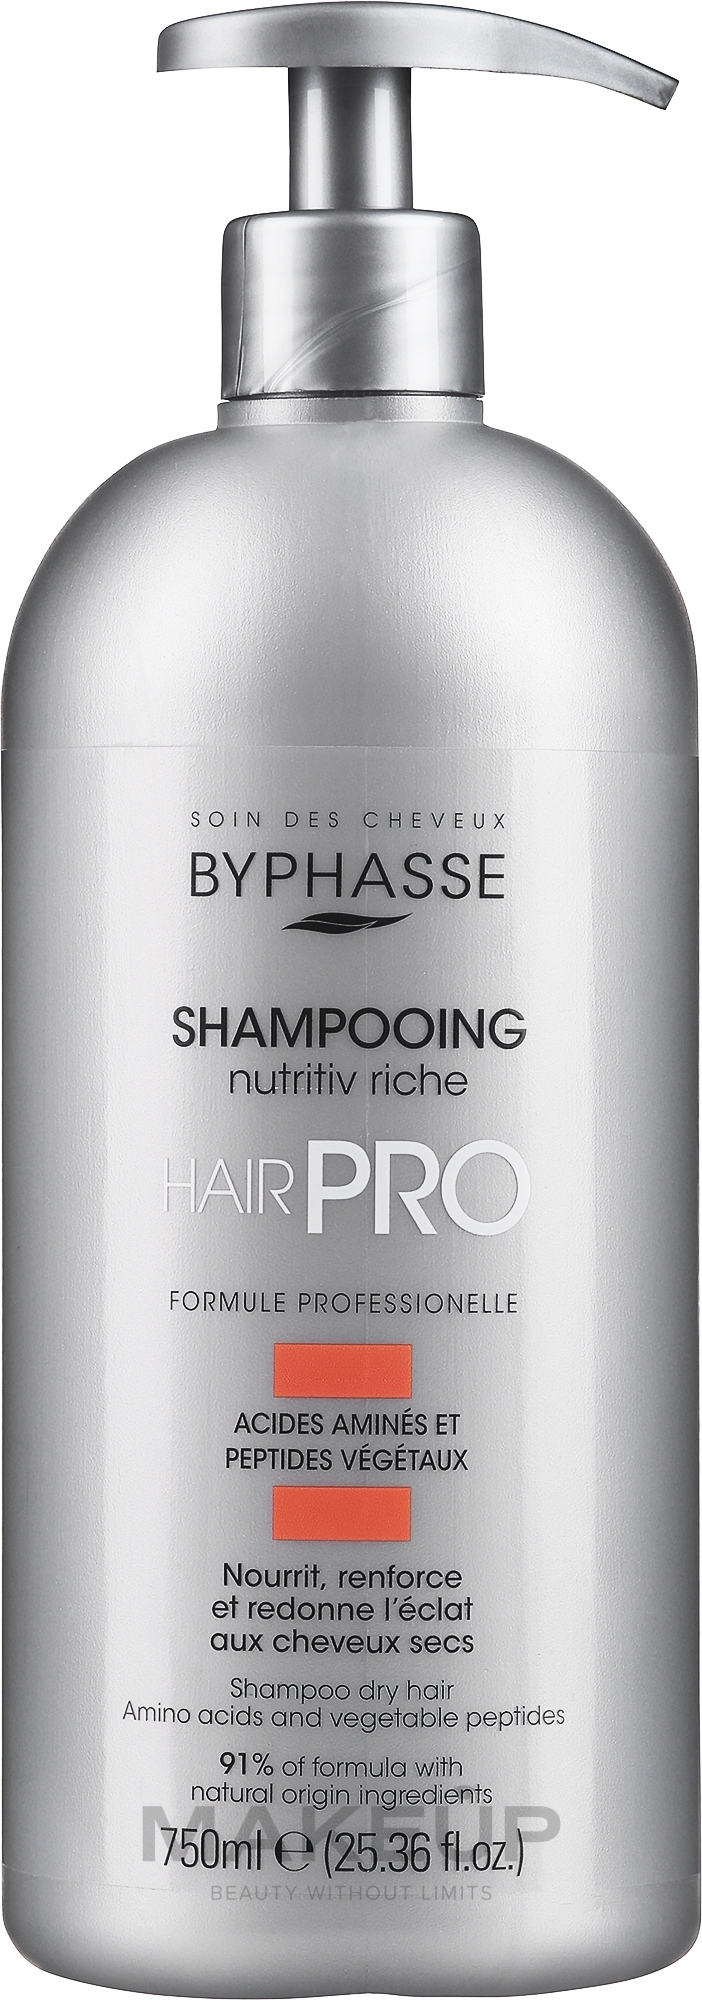 Шампунь питательный для сухих волос - Byphasse Hair Pro Shampoo Nutritiv Riche — фото 750ml